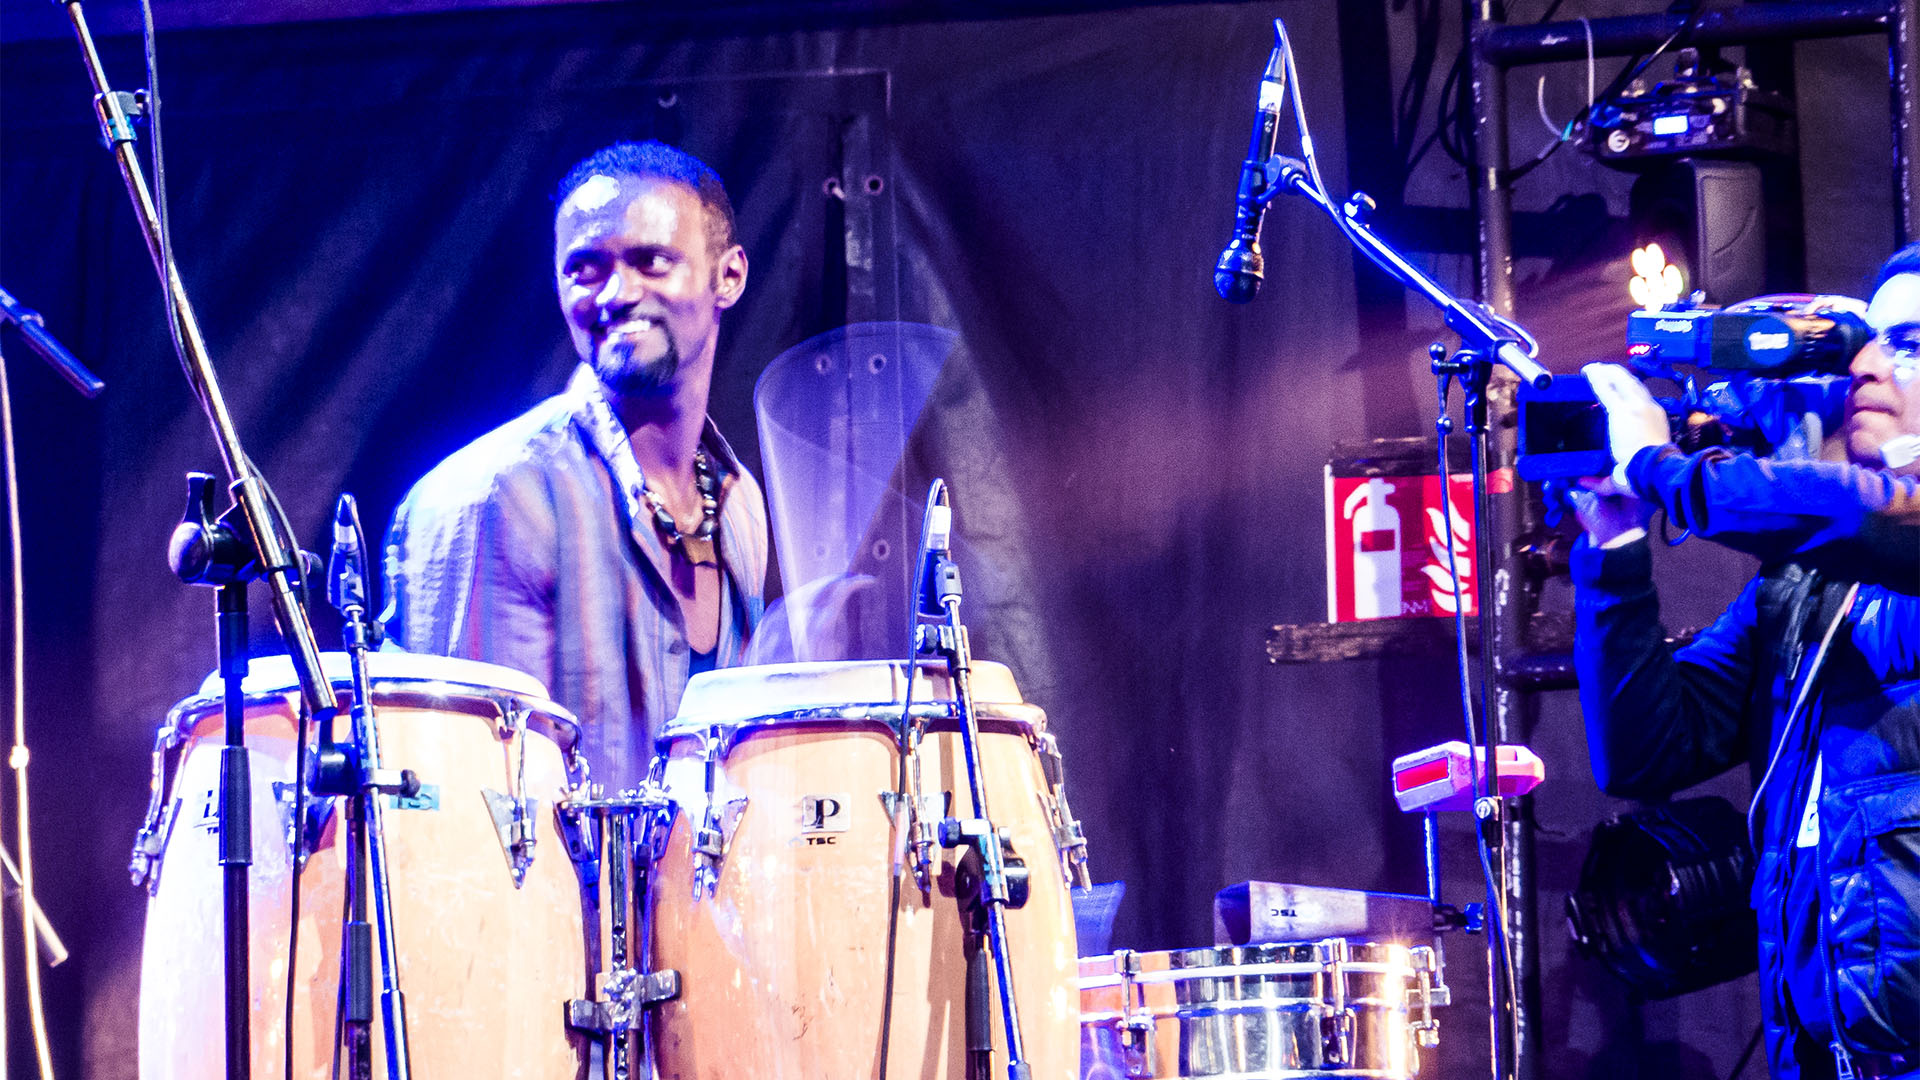 WOMAD Festival 2017 Las Palmas Gran Canaria. On stage: Das "Miroca Paris Project" – Fusion Drummer aus Cabo Verde, bringen tausende Festival Gäste zum ausgelassenen Tanzen. Sensationell.